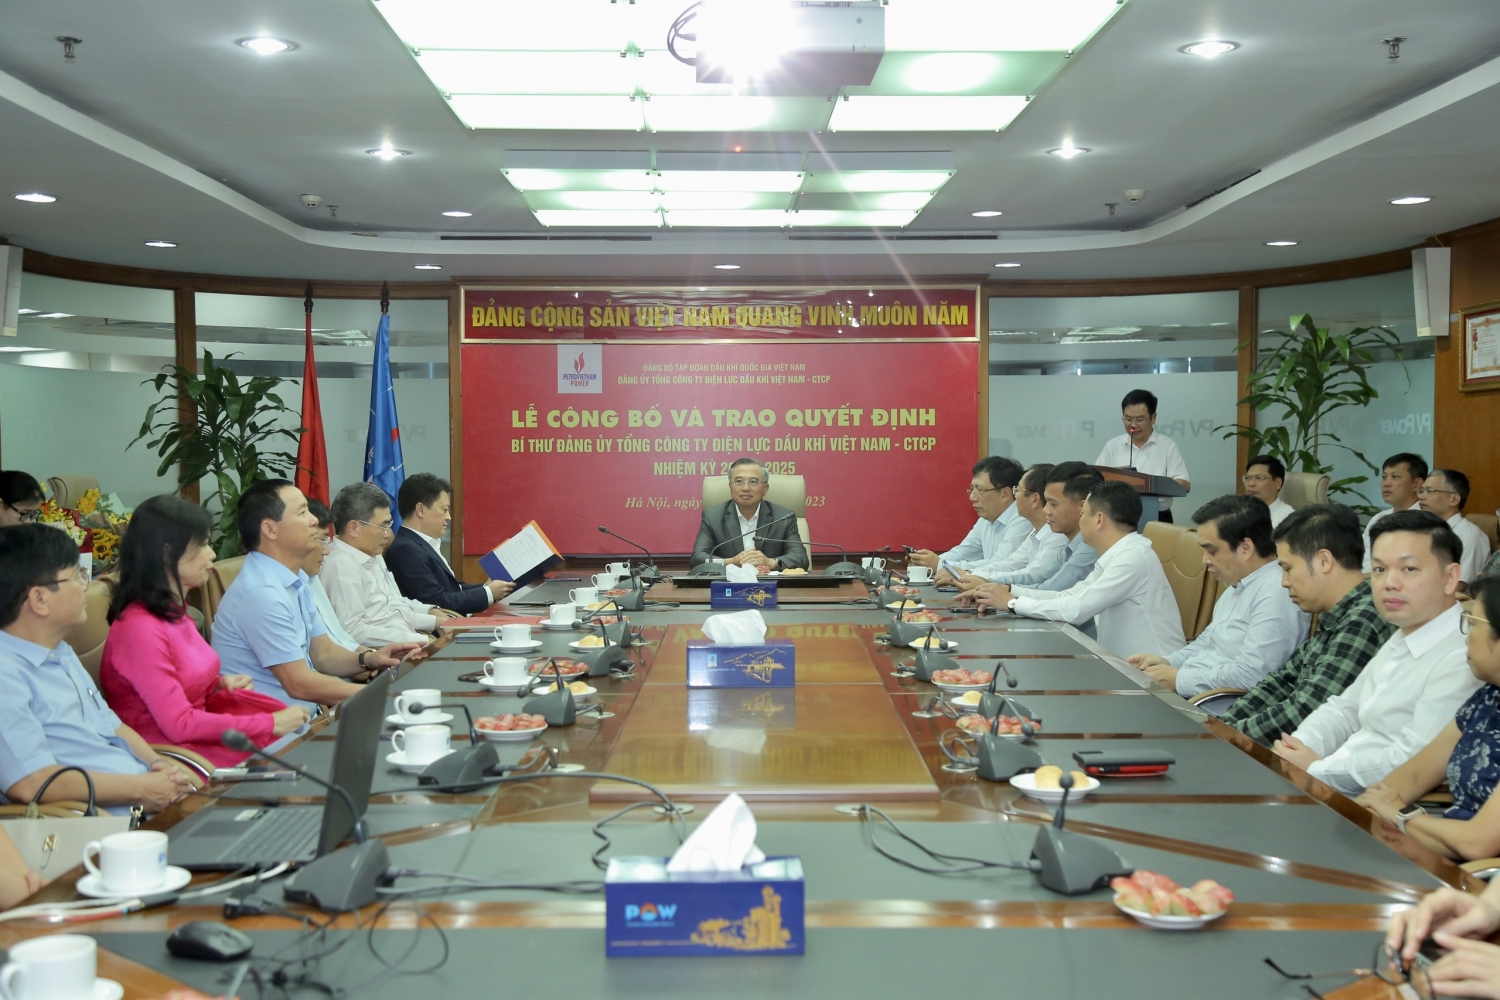 Trao quyết định Bí thư Đảng ủy Tổng Công ty Điện lực Dầu khí Việt Nam nhiệm kỳ 2020-2025